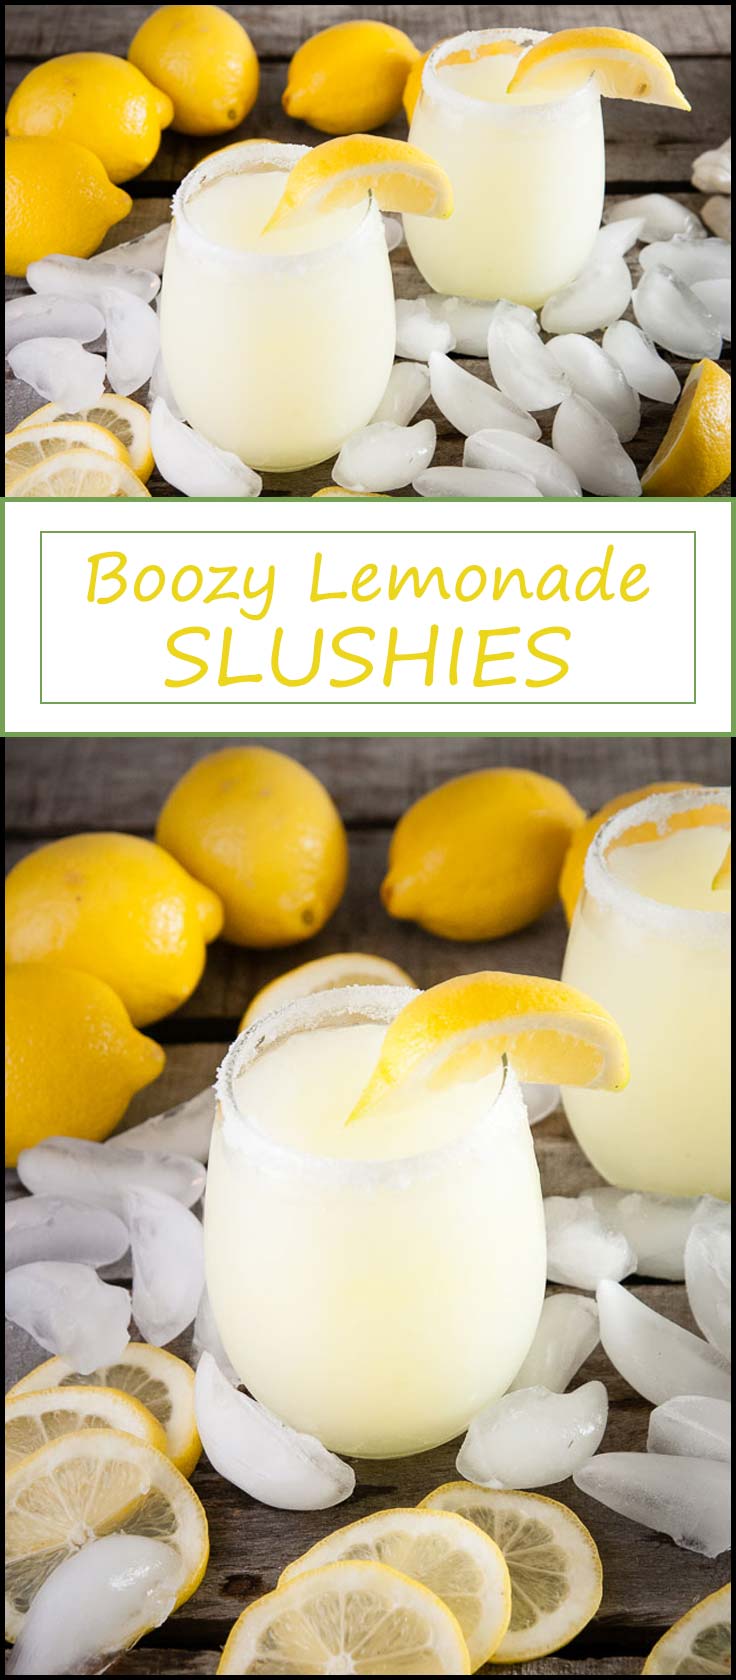 Recette de boozy lemonade slushies avec de la limonade glacée, limoncello, et vodka aux agrumes de www.seasonedsprinkles.com